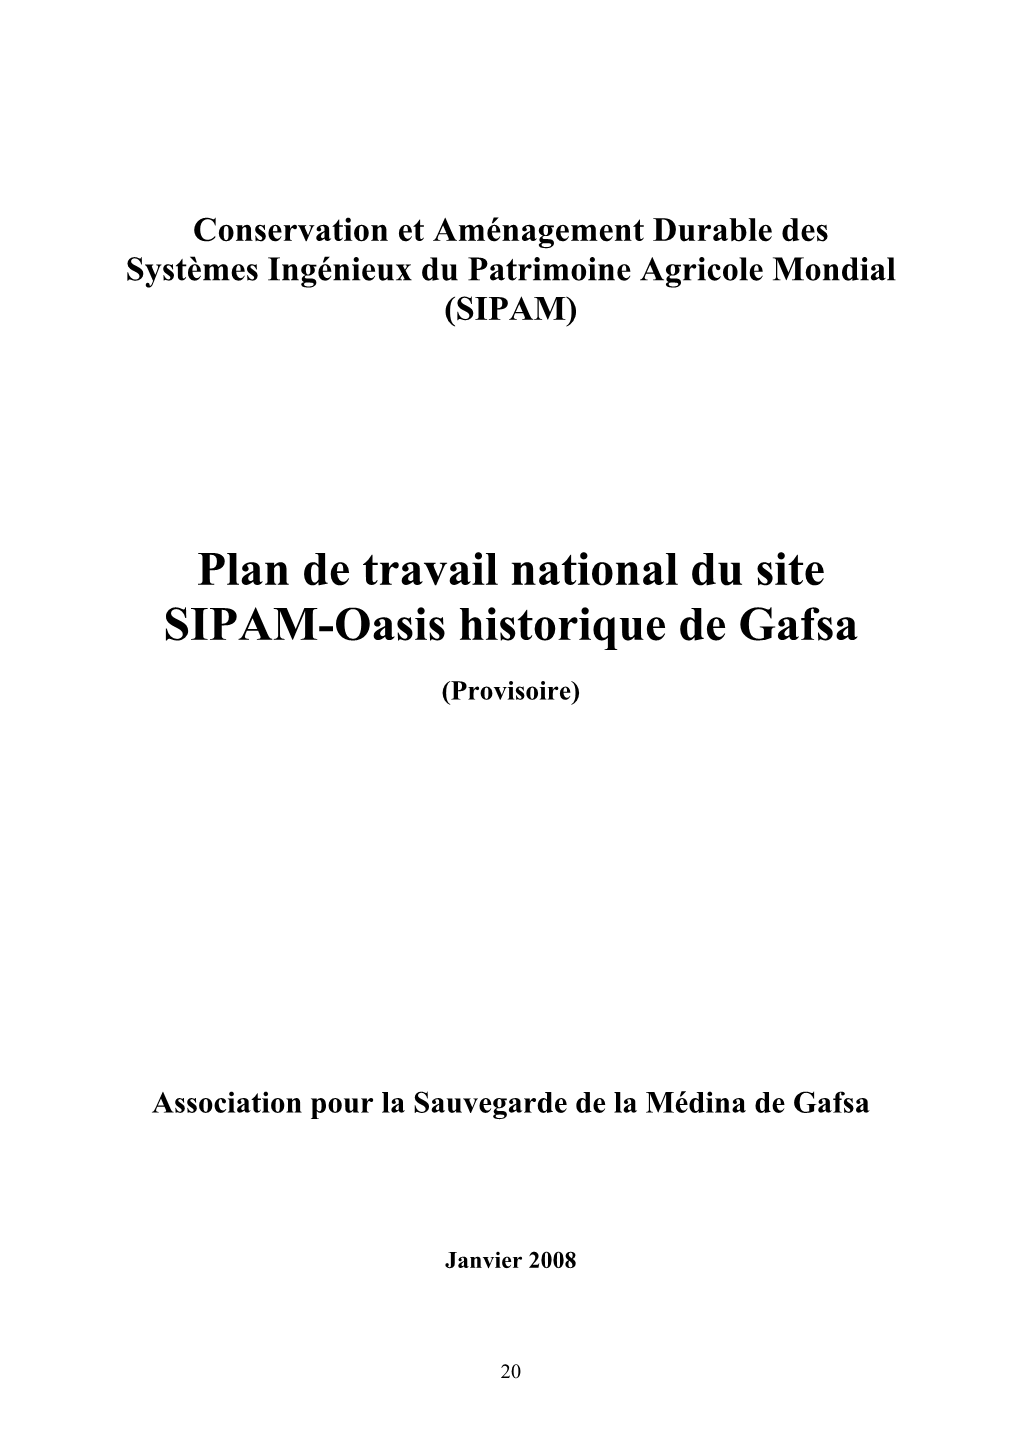 Plan De Travail National Du Site SIPAM-Oasis Historique De Gafsa